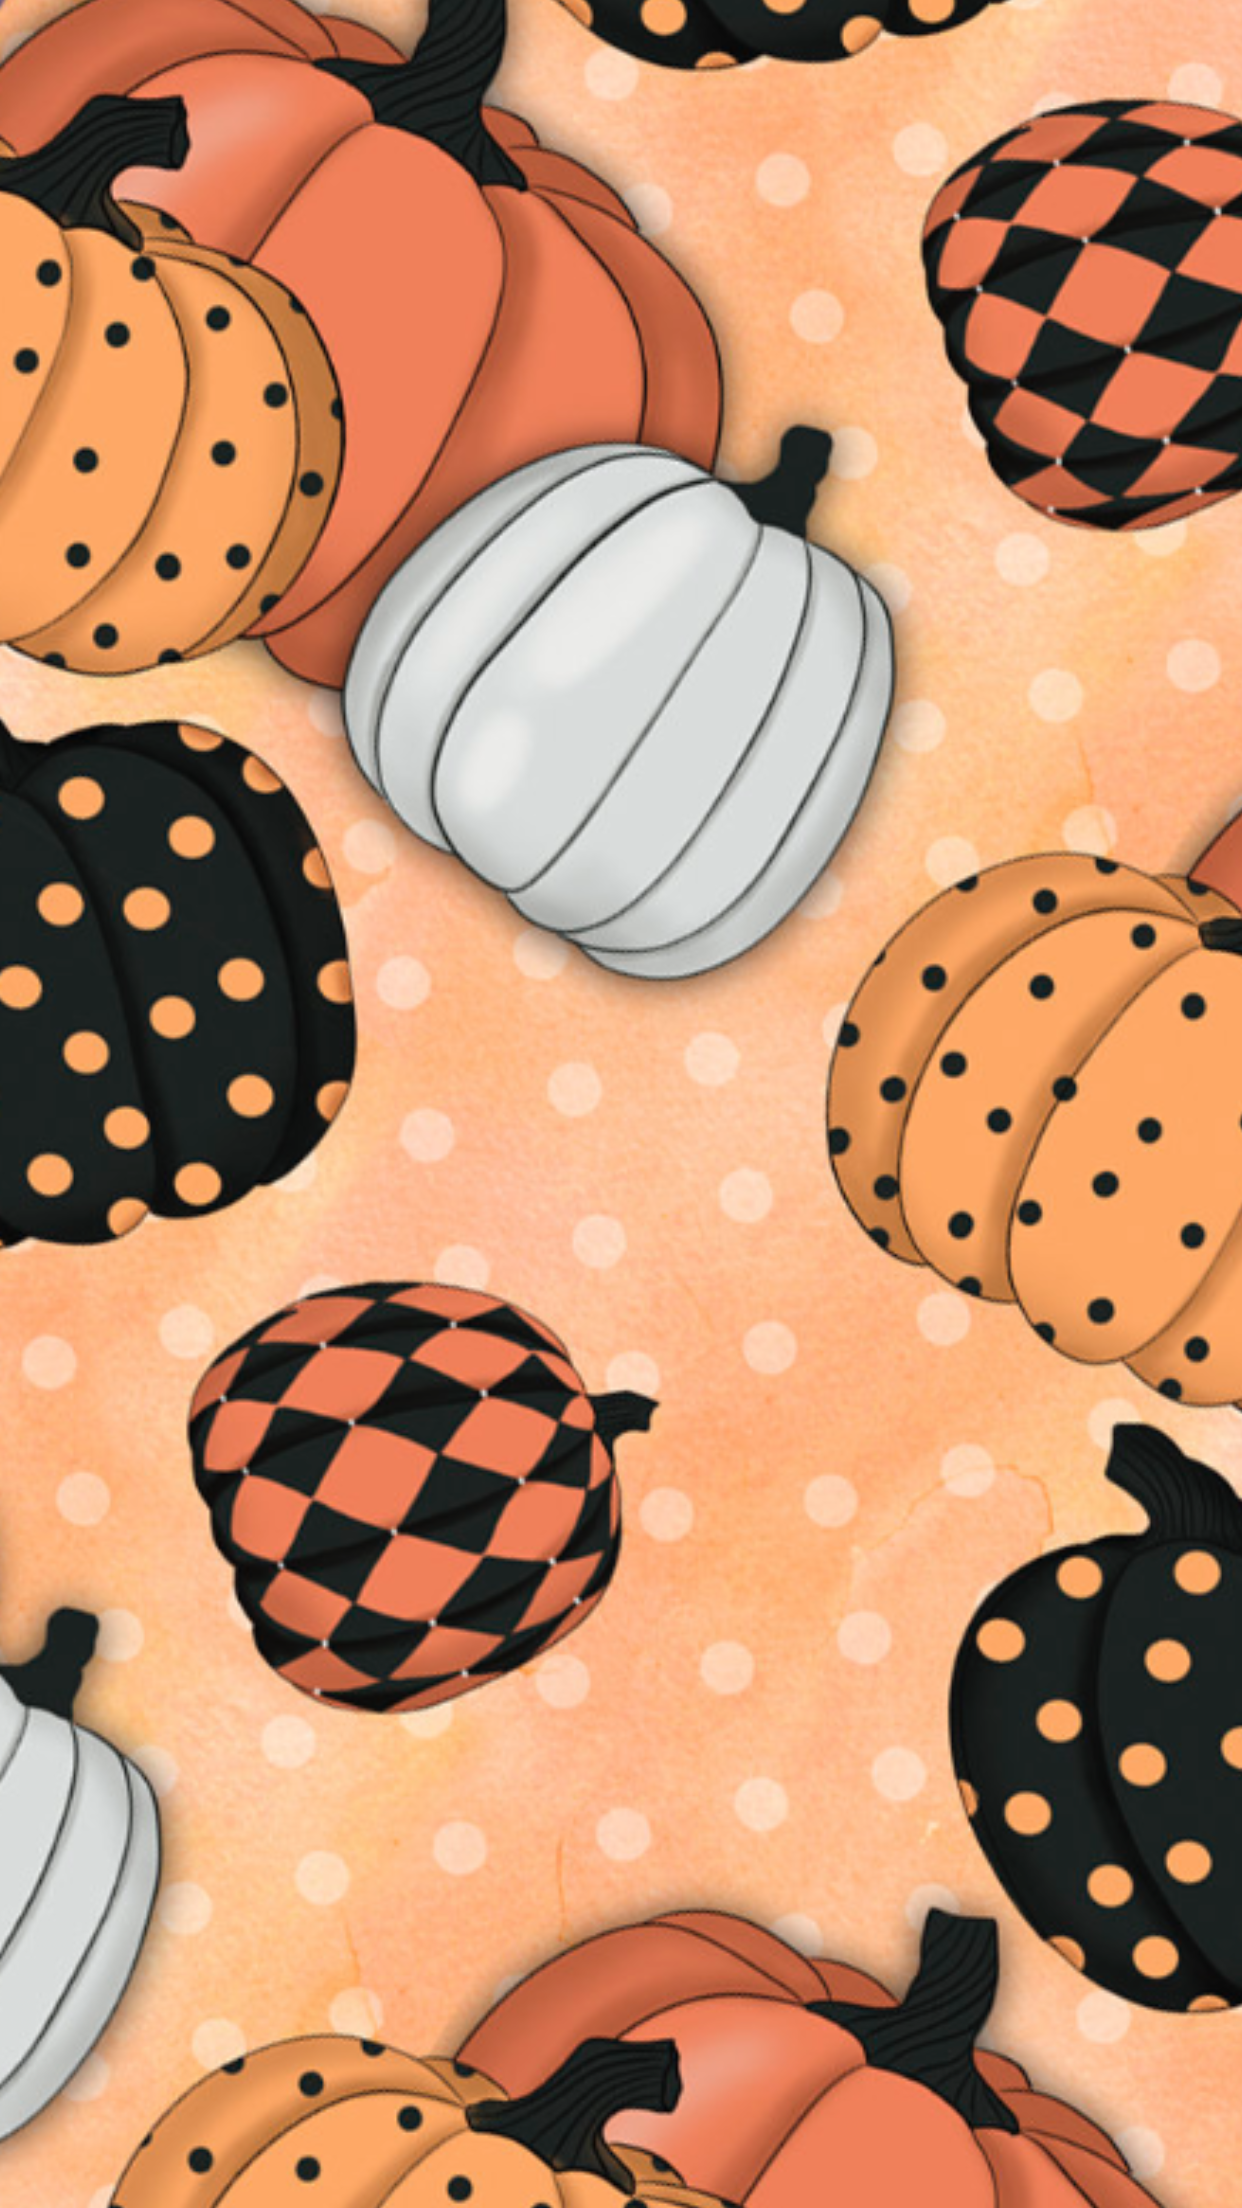 Pumpkin wallpaper. Halloween wallpaper iphone, Pumpkin wallpaper, Halloween wallpaper